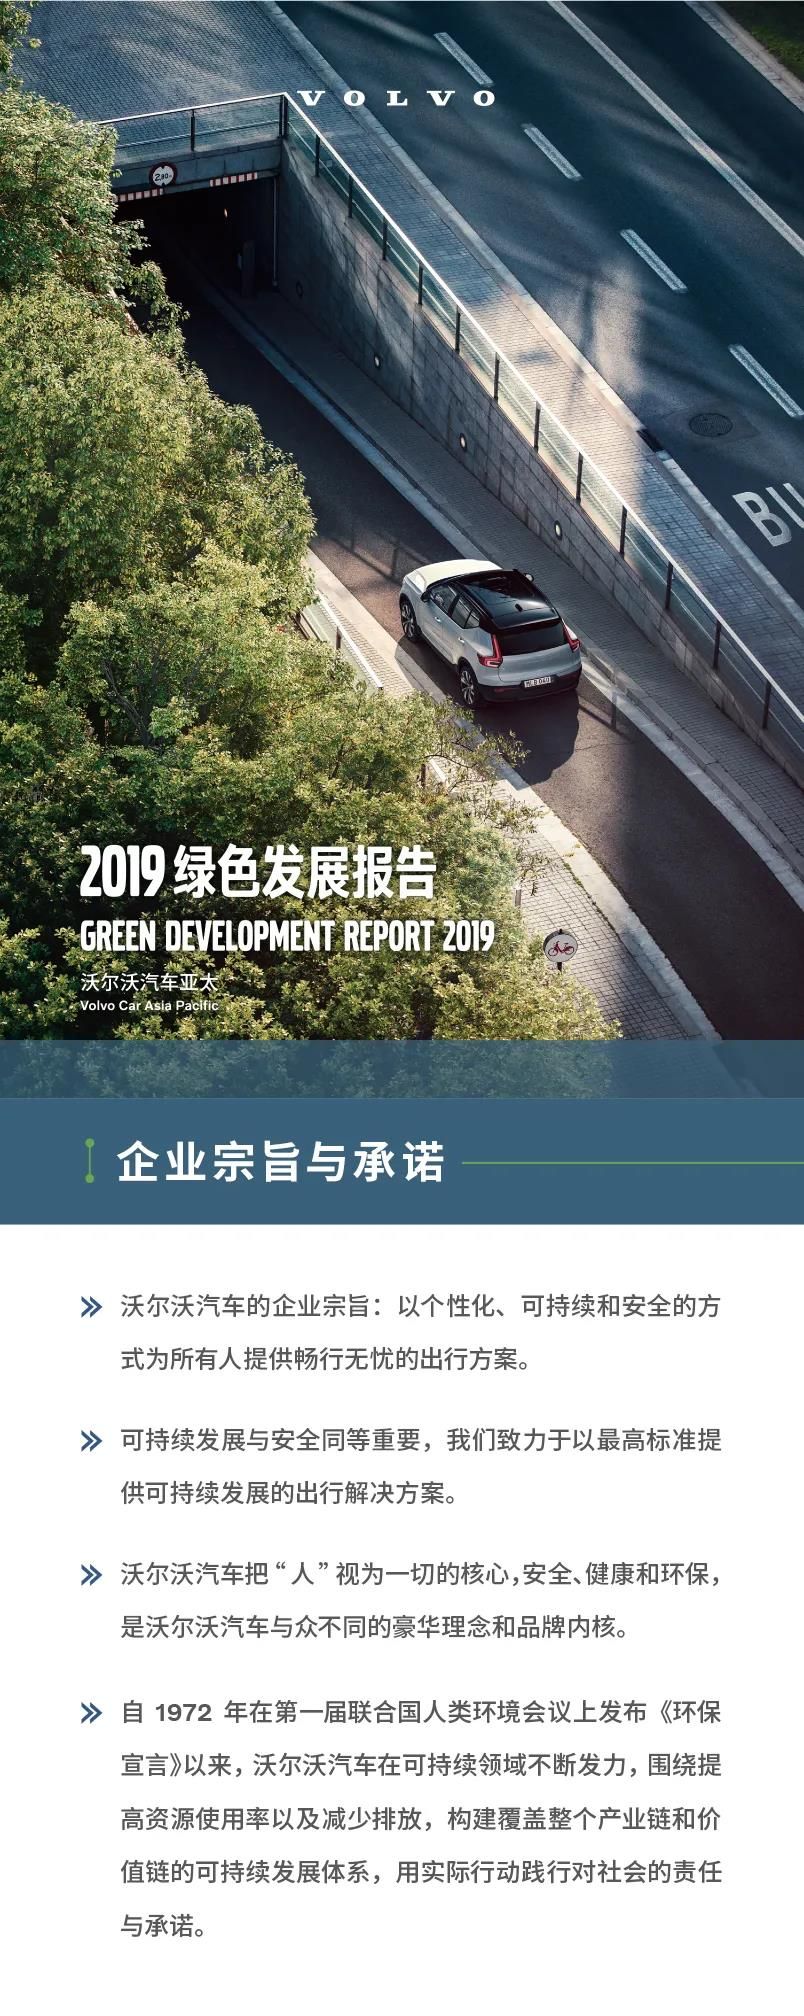 沃尔沃首度在中国发布年度企业绿色发展报告